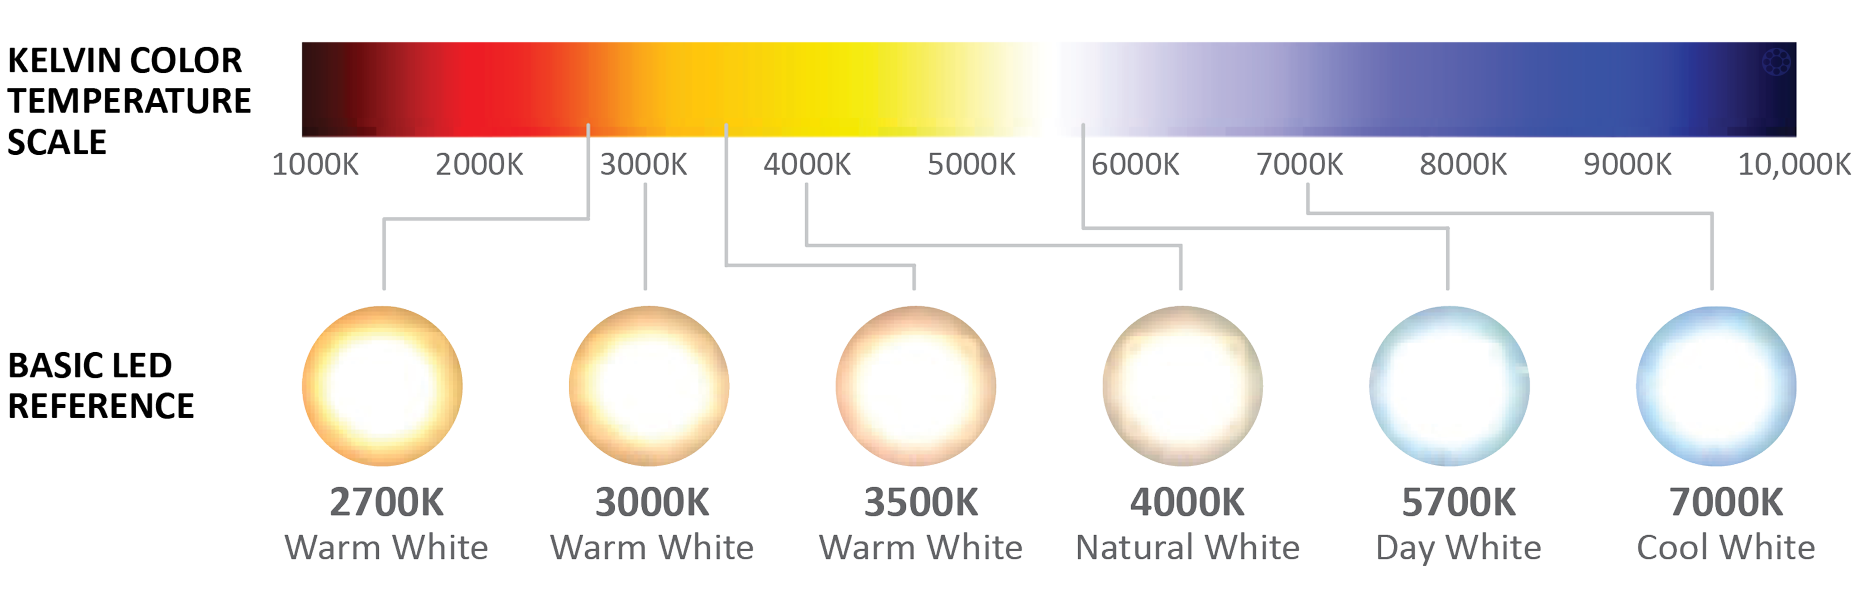 Желтый свет температура. Светодиодные лампы градация цветности. Температура светодиодных ламп таблица. Температура света в Кельвинах таблица. Таблица свечения светодиодных ламп.